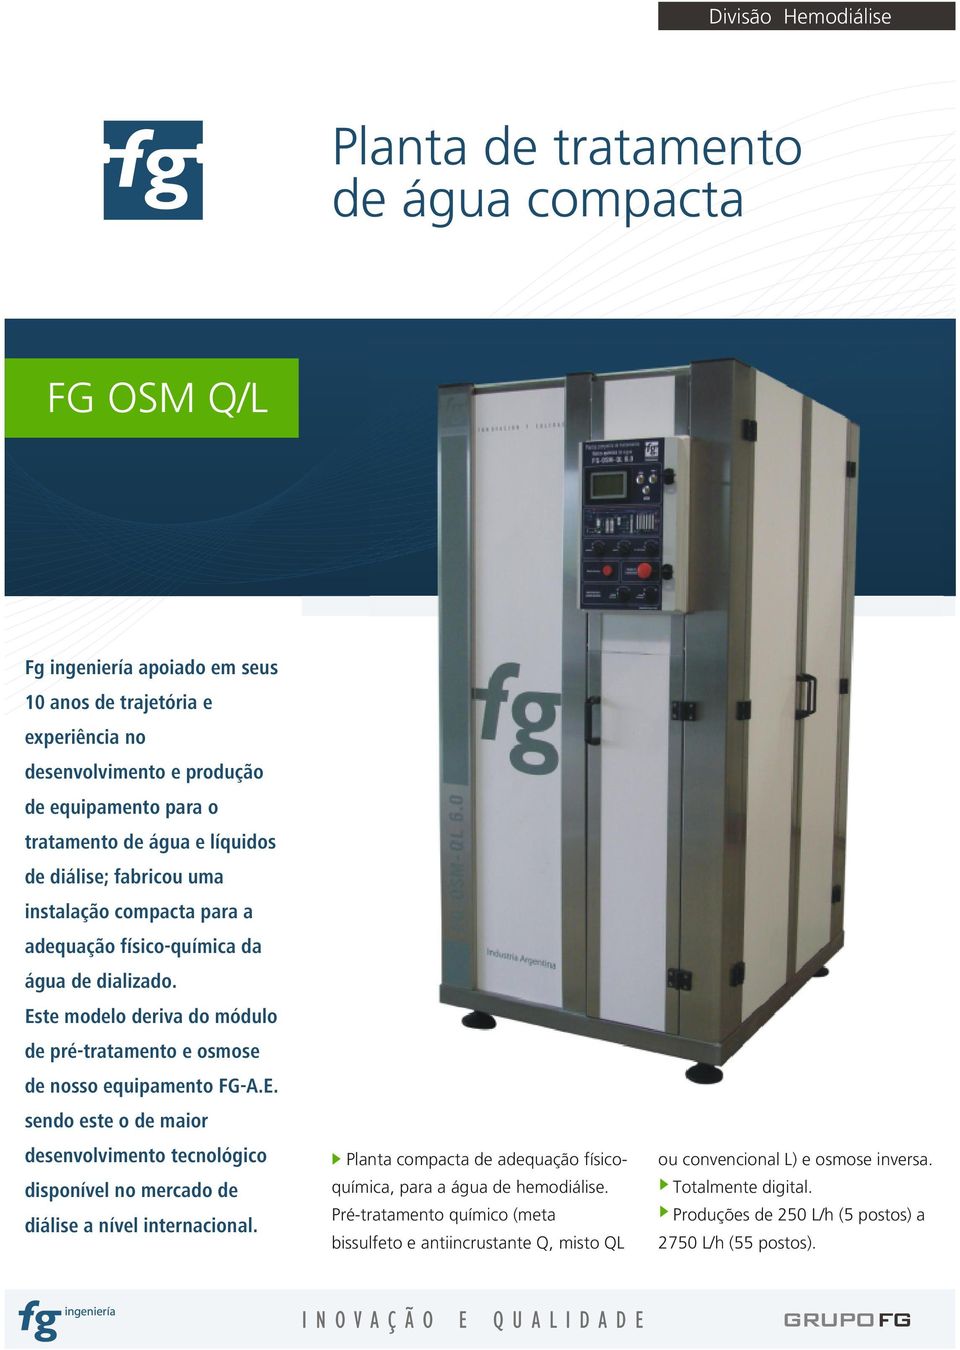 Este modelo deriva do módulo de pré-tratamento e osmose de nosso equipamento FG-A.E. sendo este o de maior desenvolvimento tecnológico disponível no mercado de diálise a nível internacional.